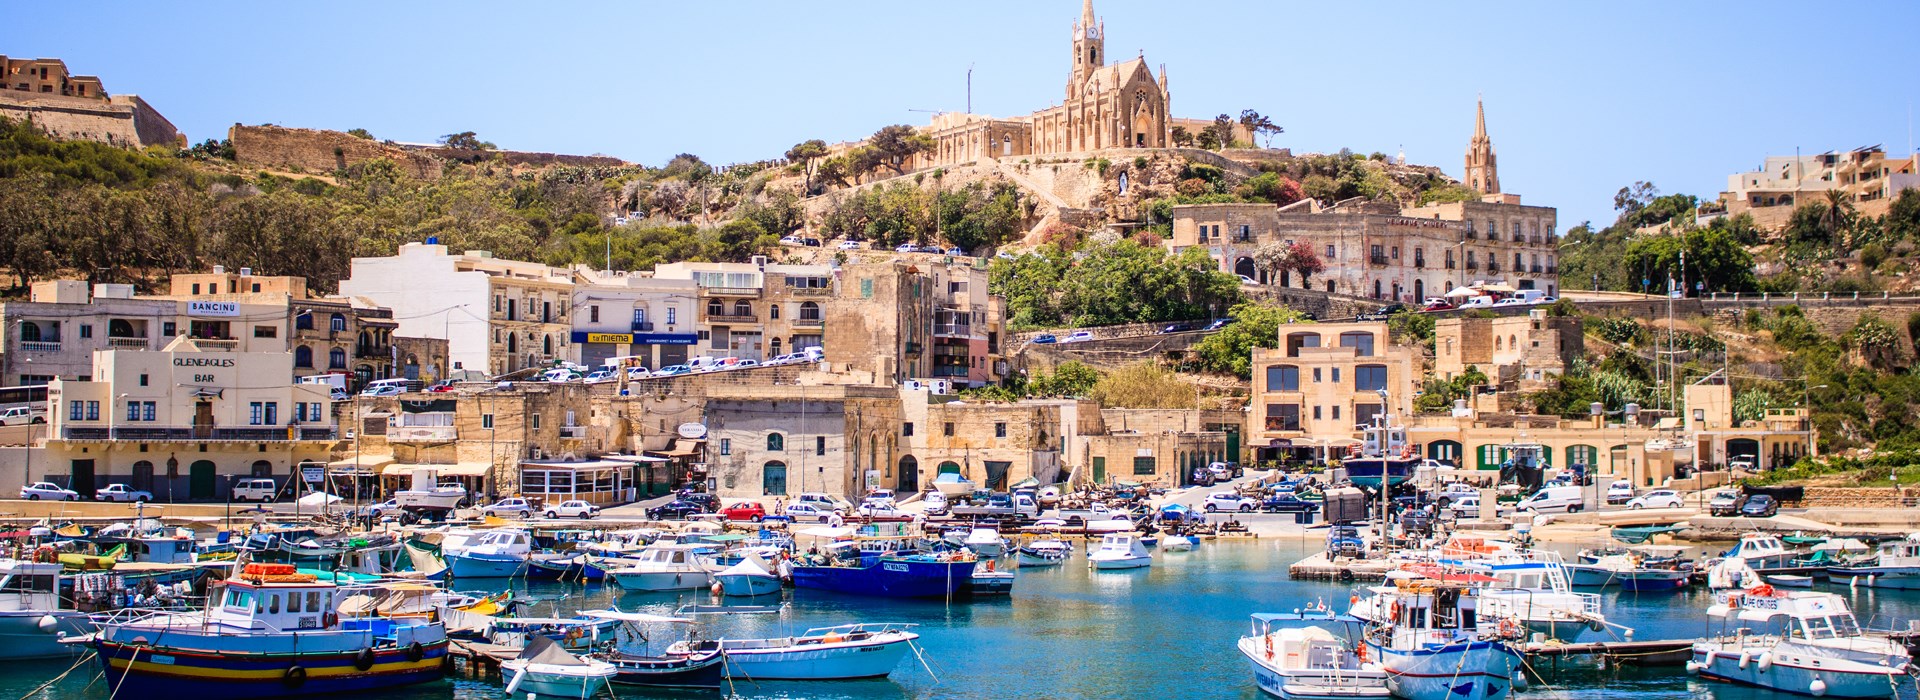 Visiter L'île de Gozo - Malte